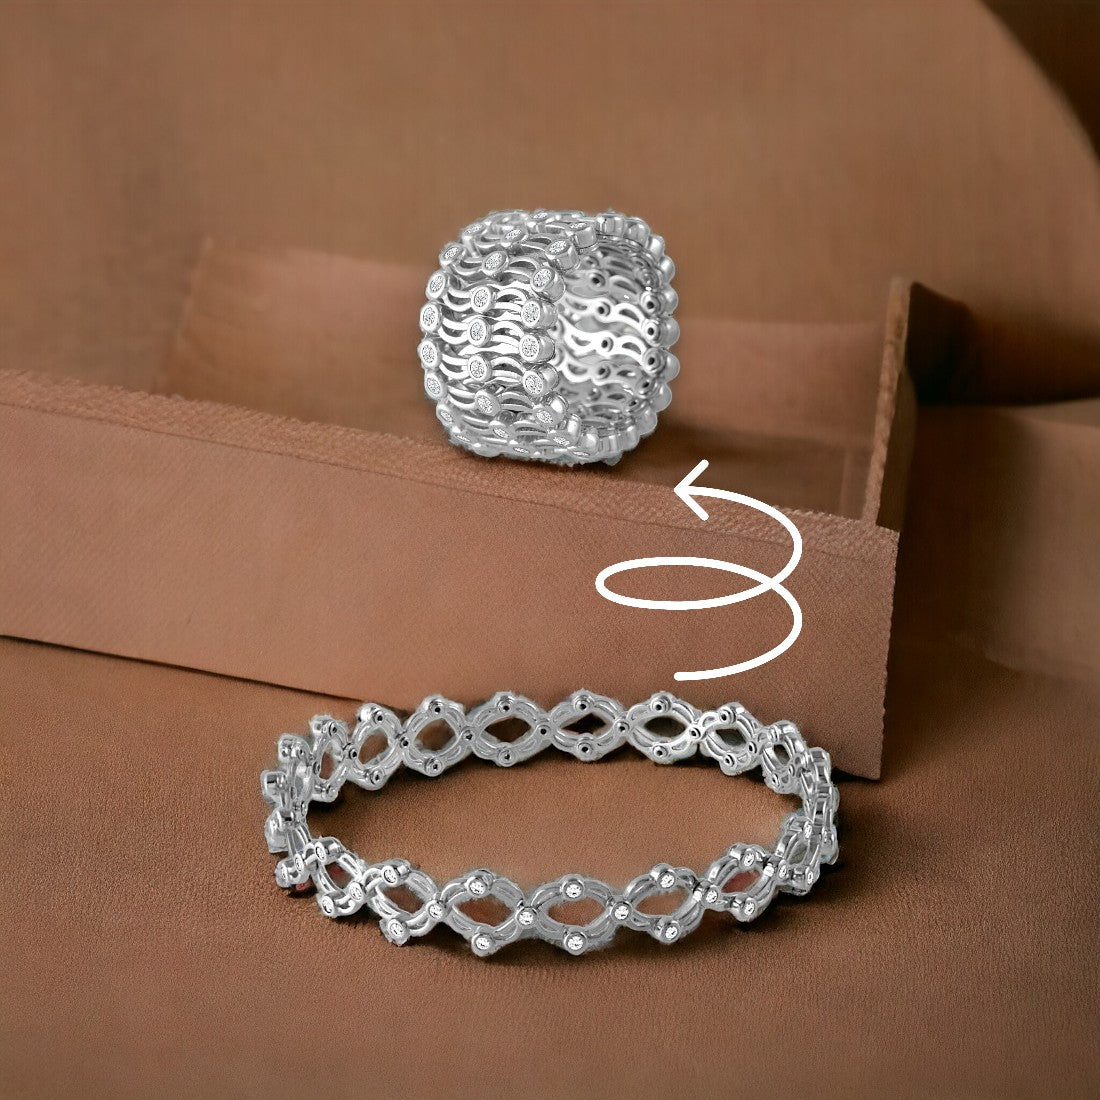 Sterling Silver Bracelet Or Ring For Women & Girls